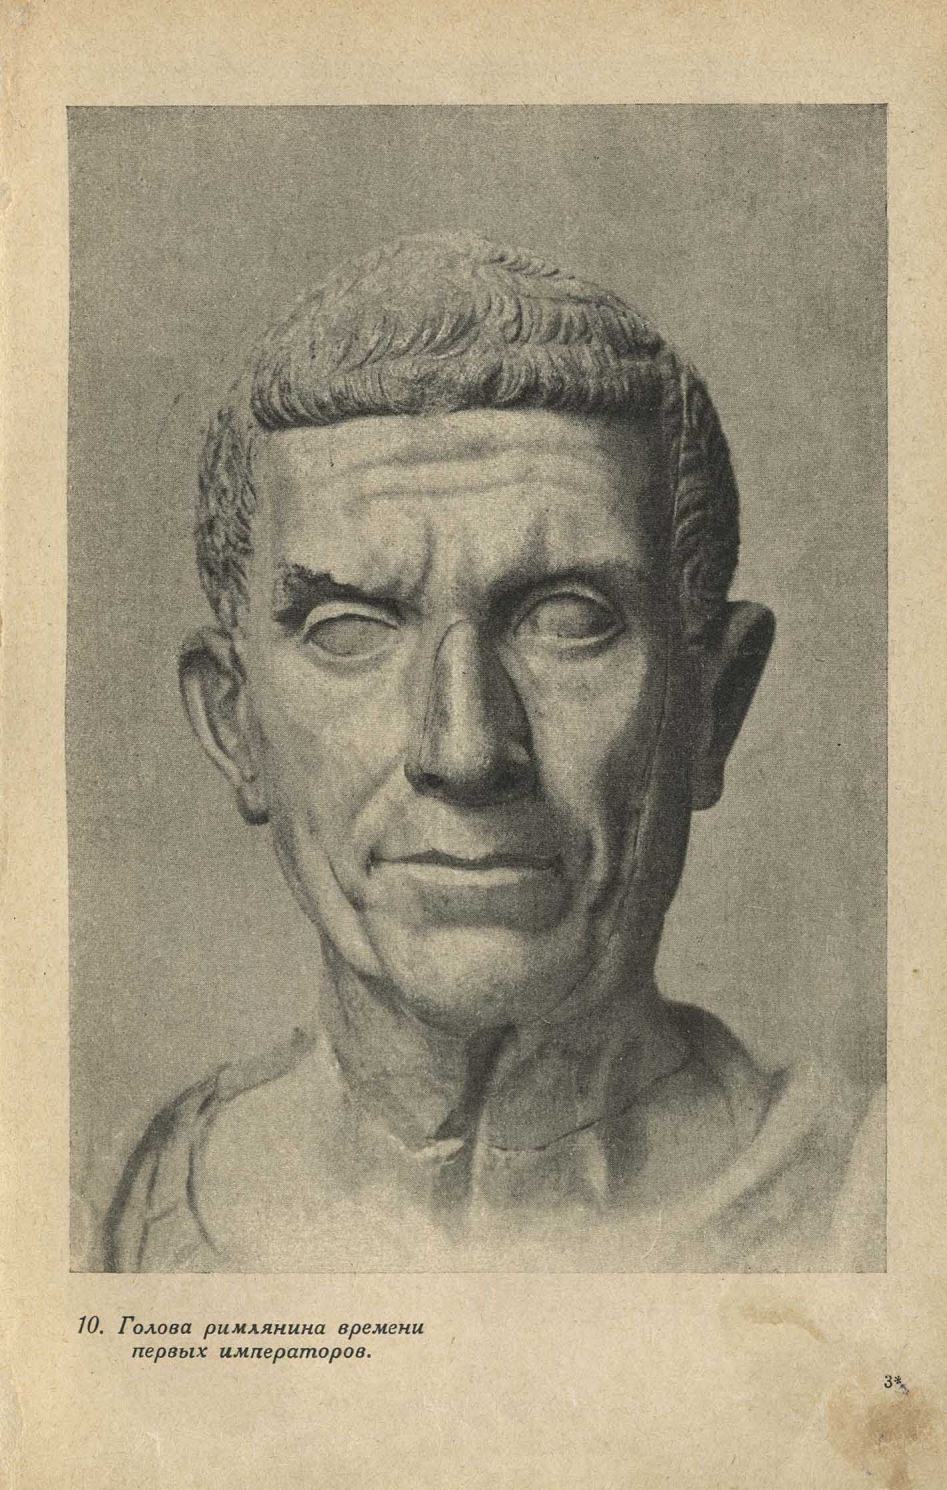 Голова римлянина времени первых императоров